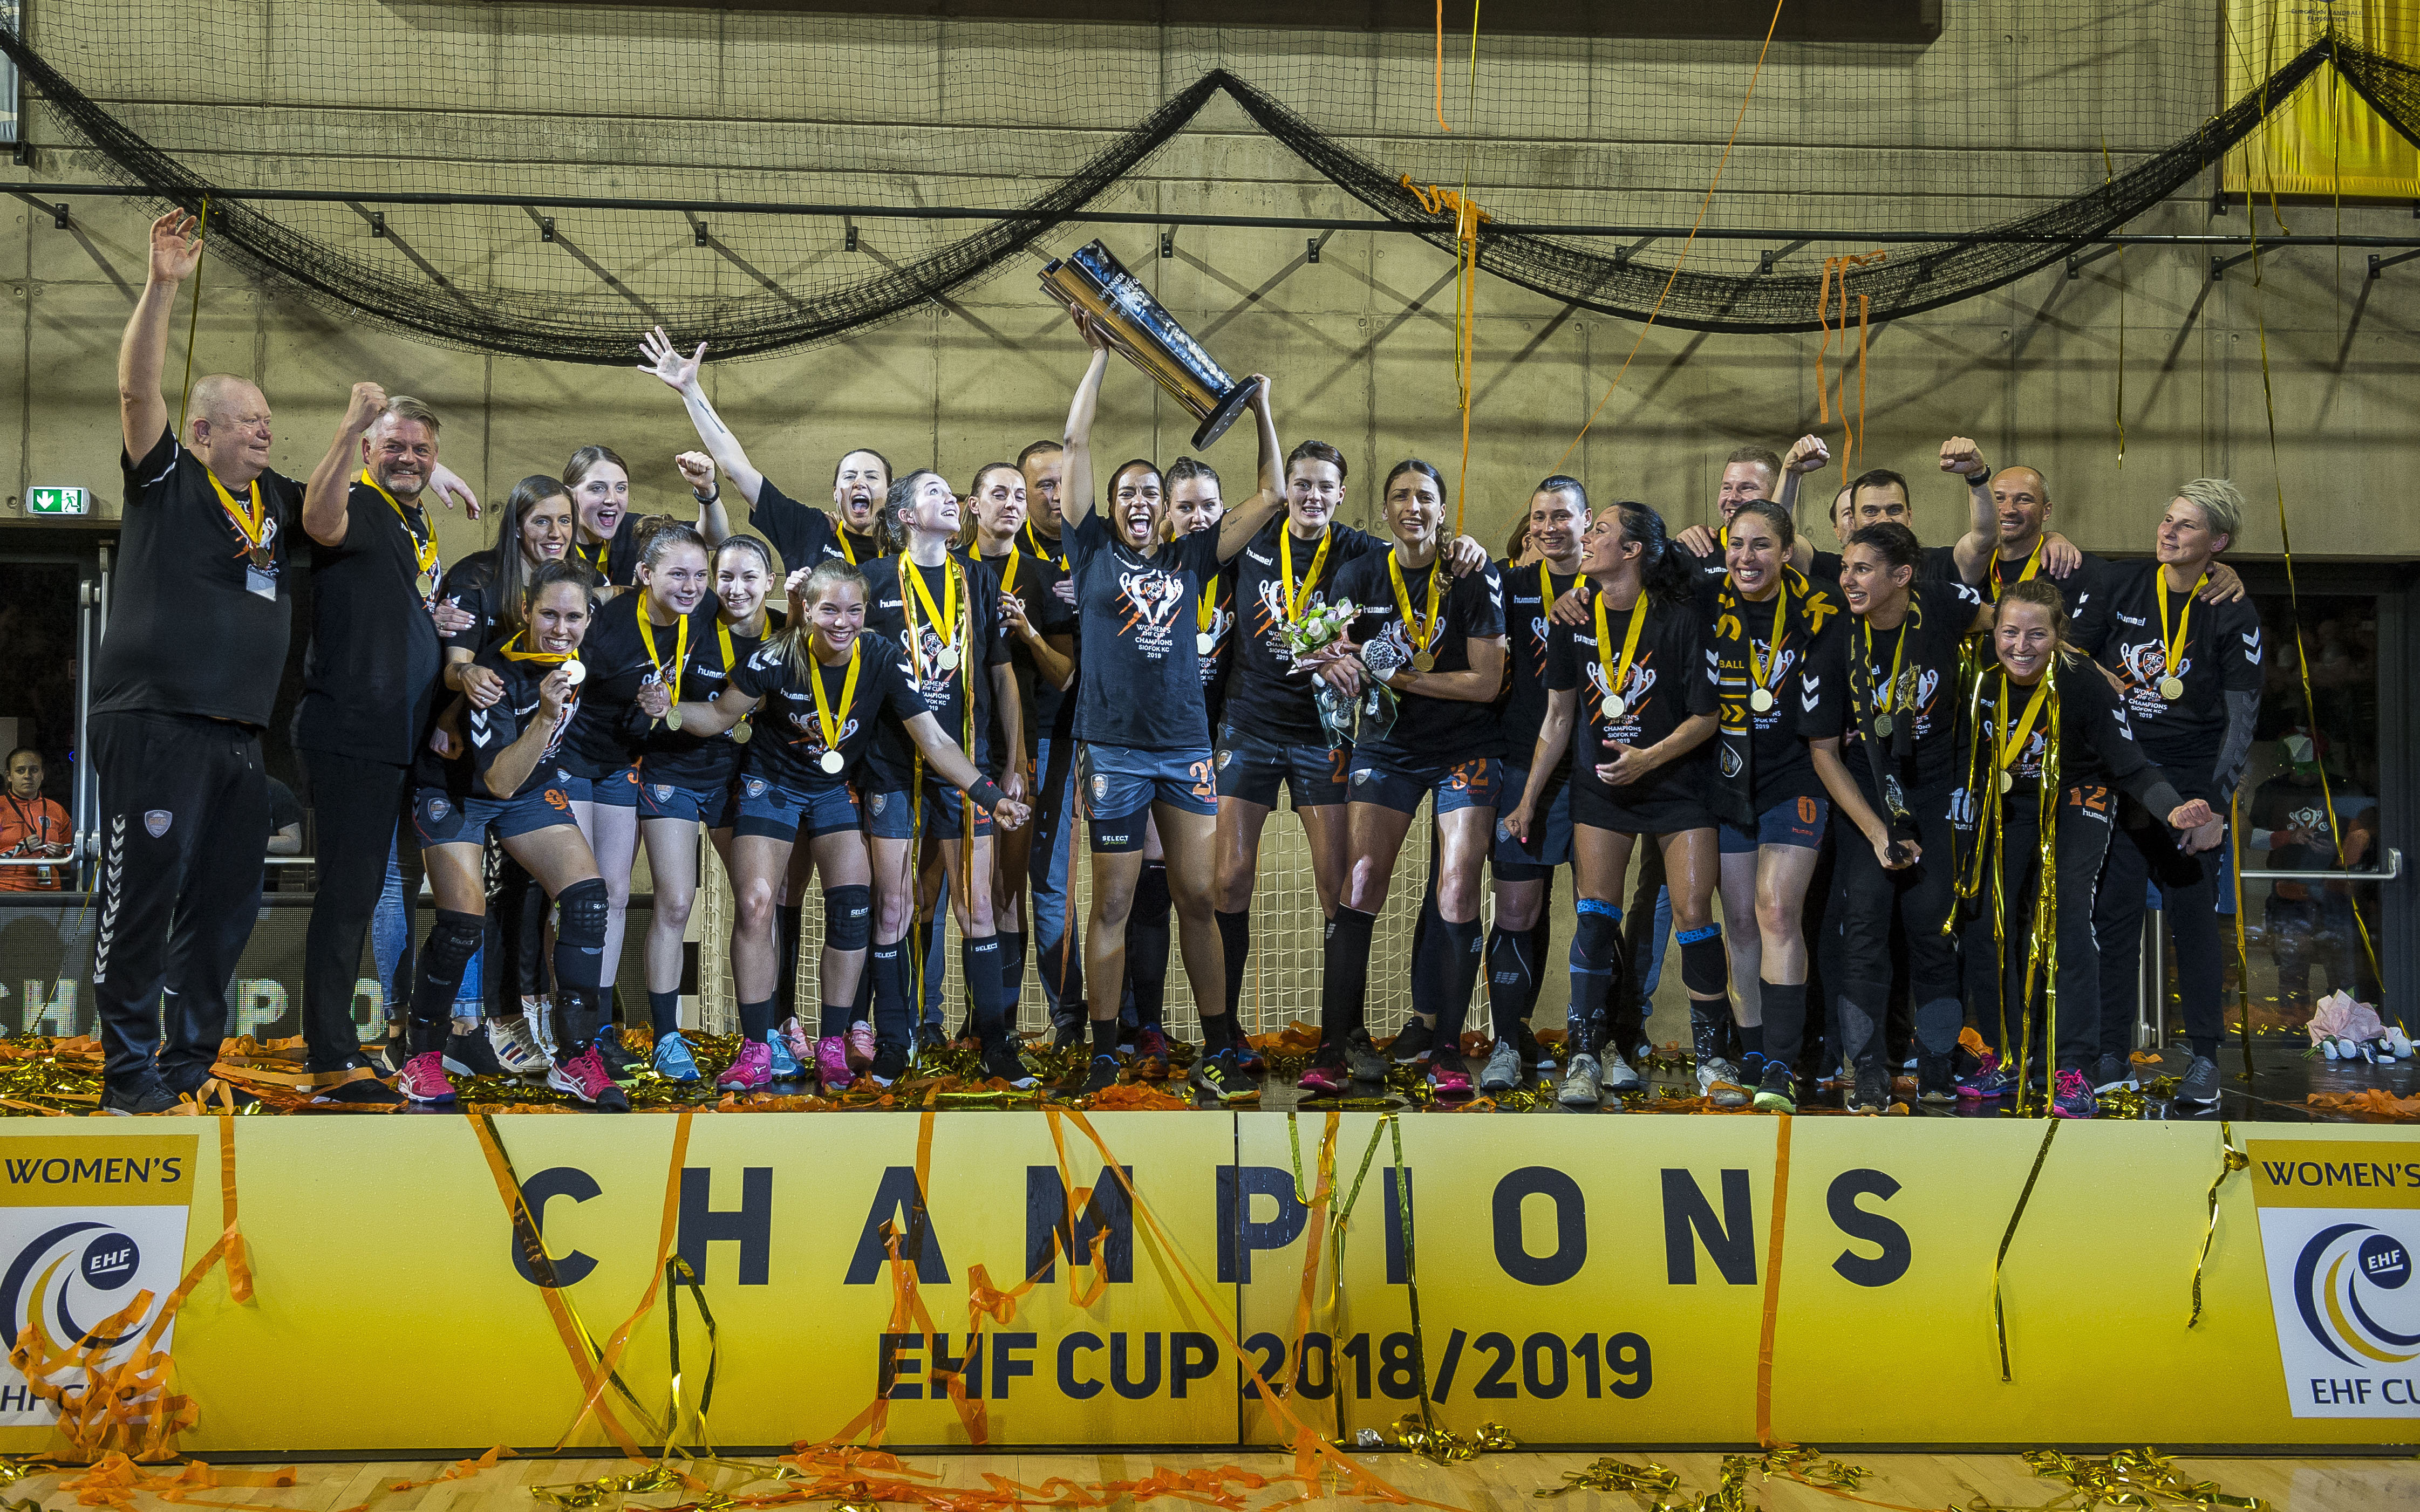 Siófok vince la EHF CUP femminile per il primo titolo del club!